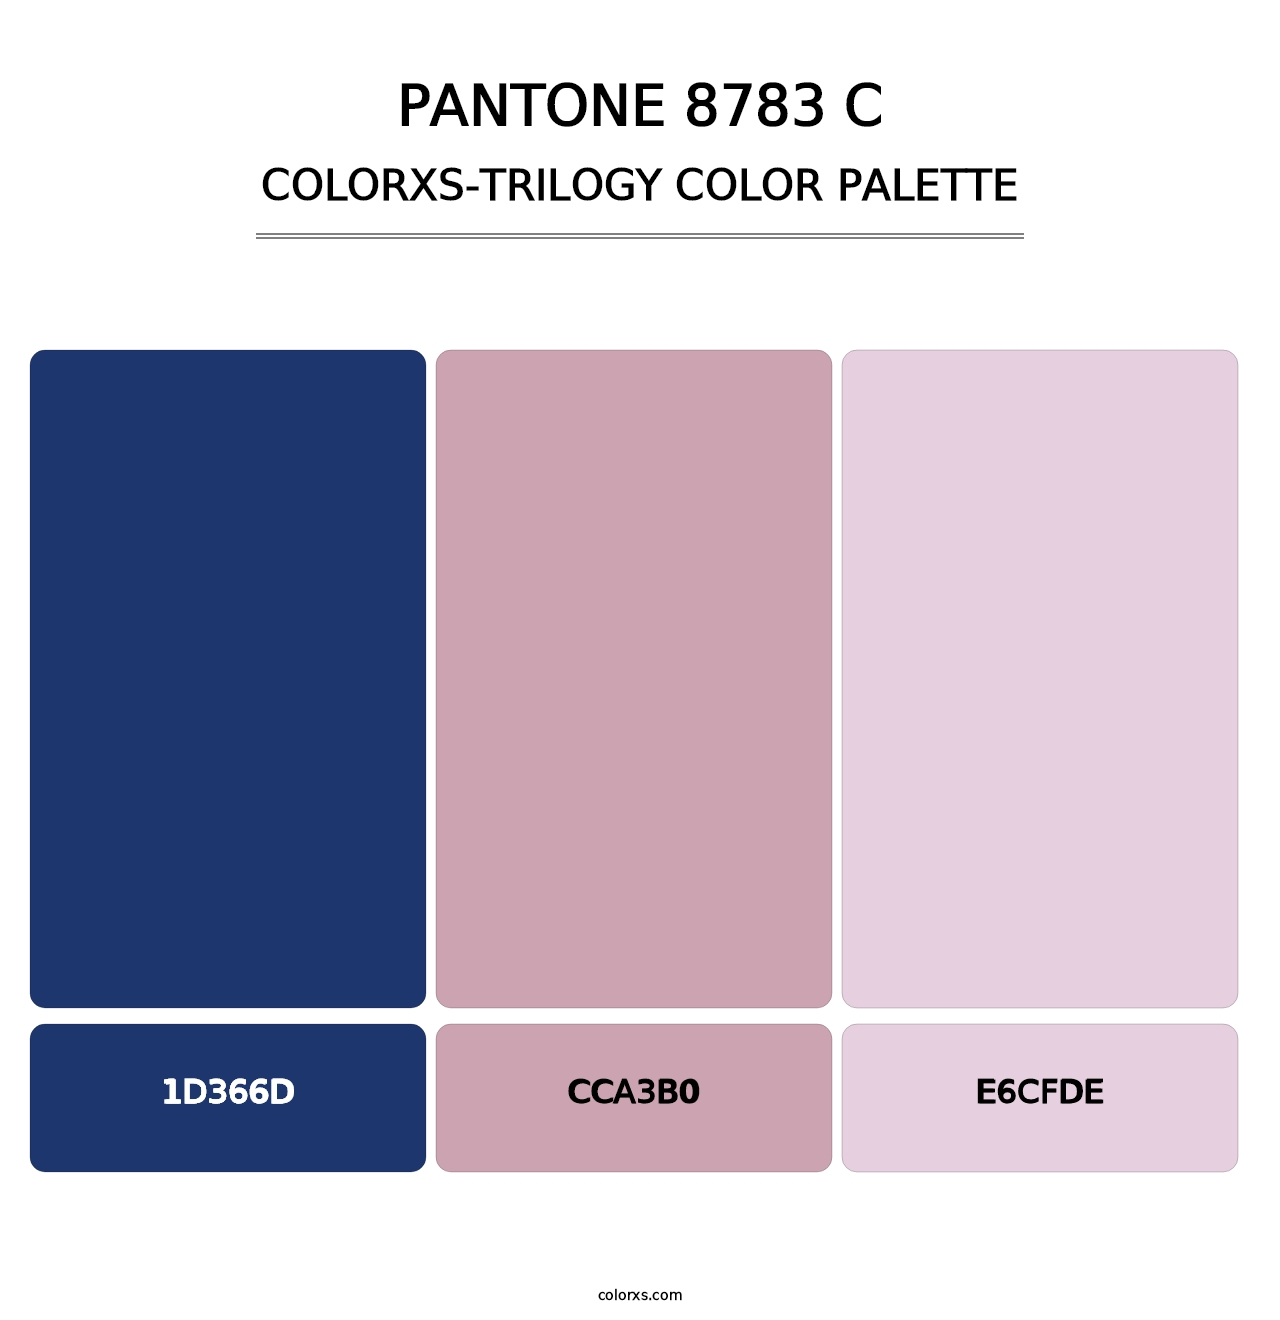 PANTONE 8783 C - Colorxs Trilogy Palette